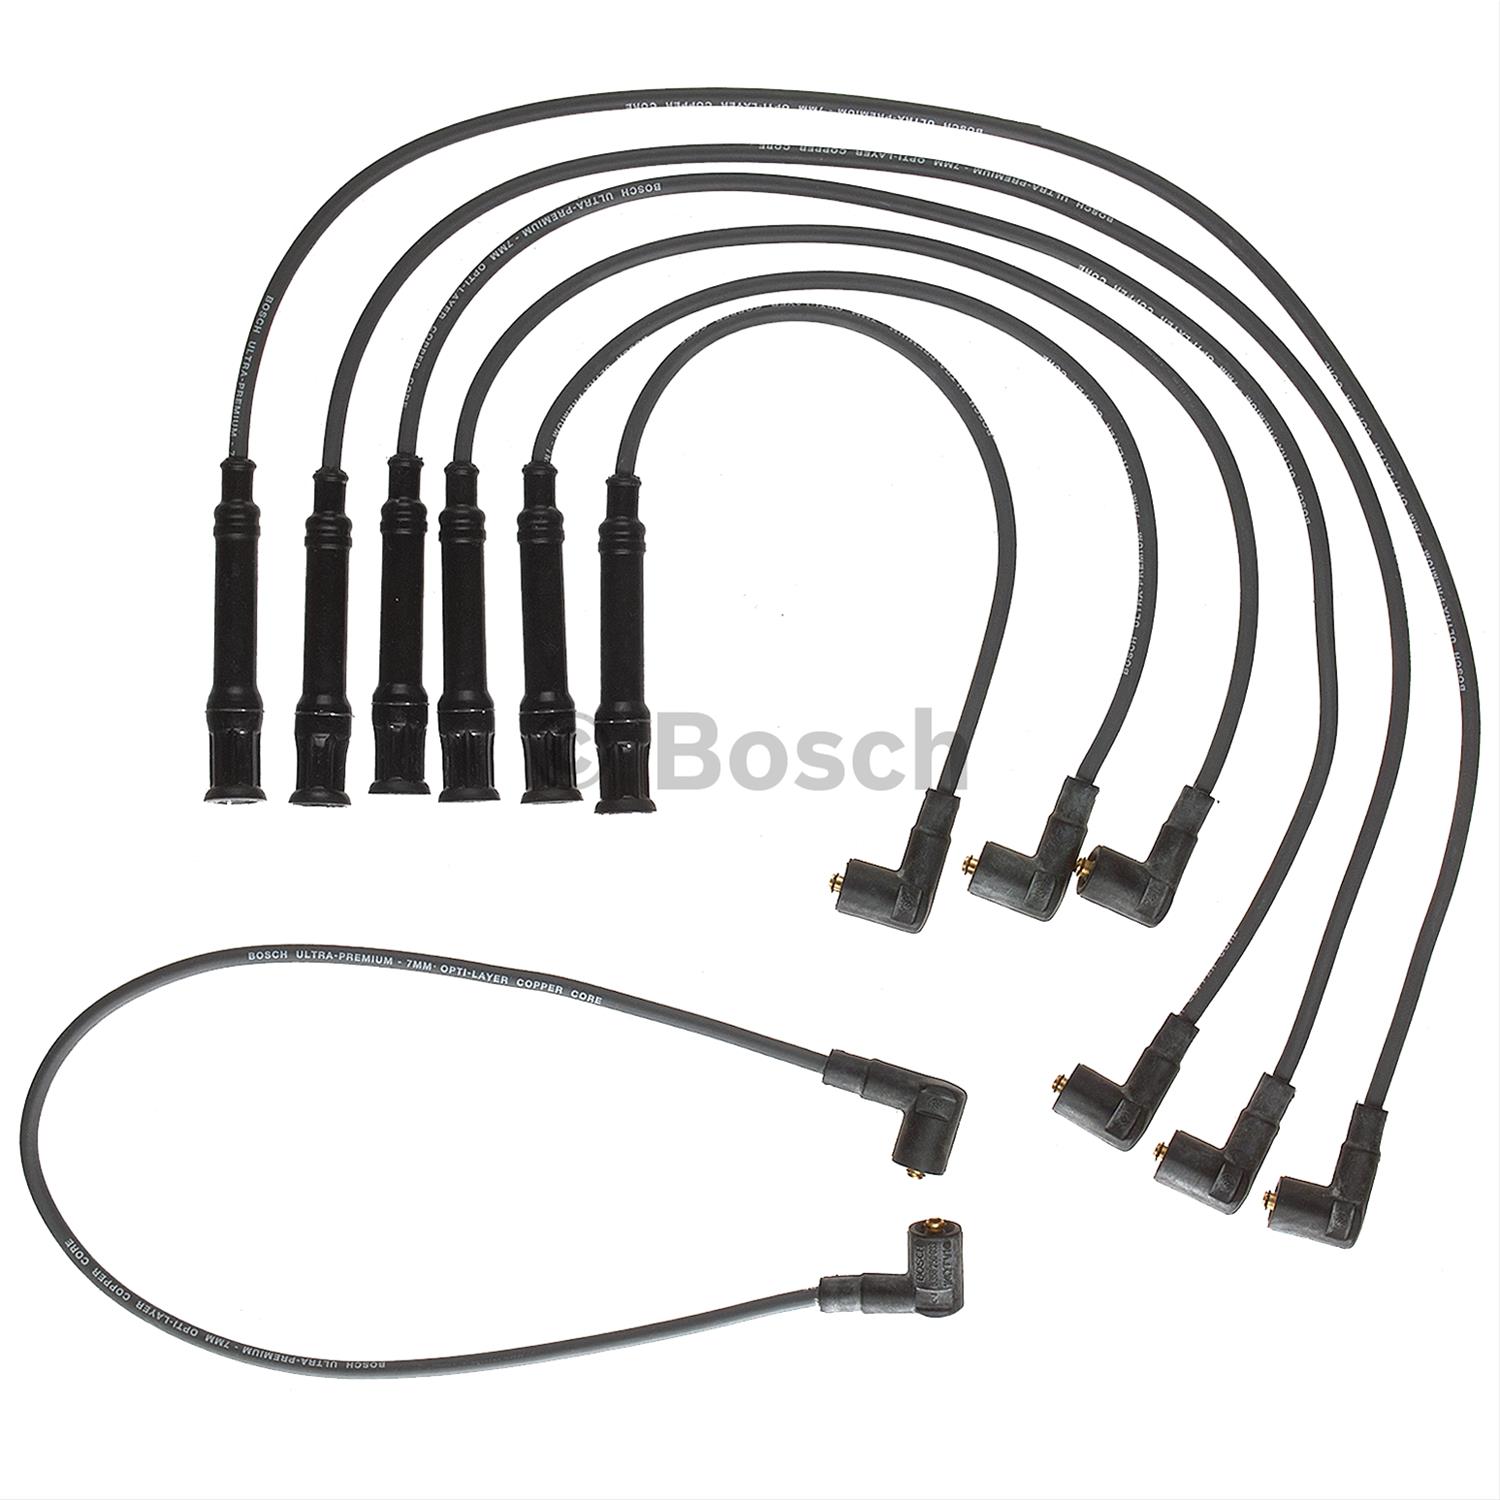 Bosch 09110 Premium Spark Plug Wire Set 